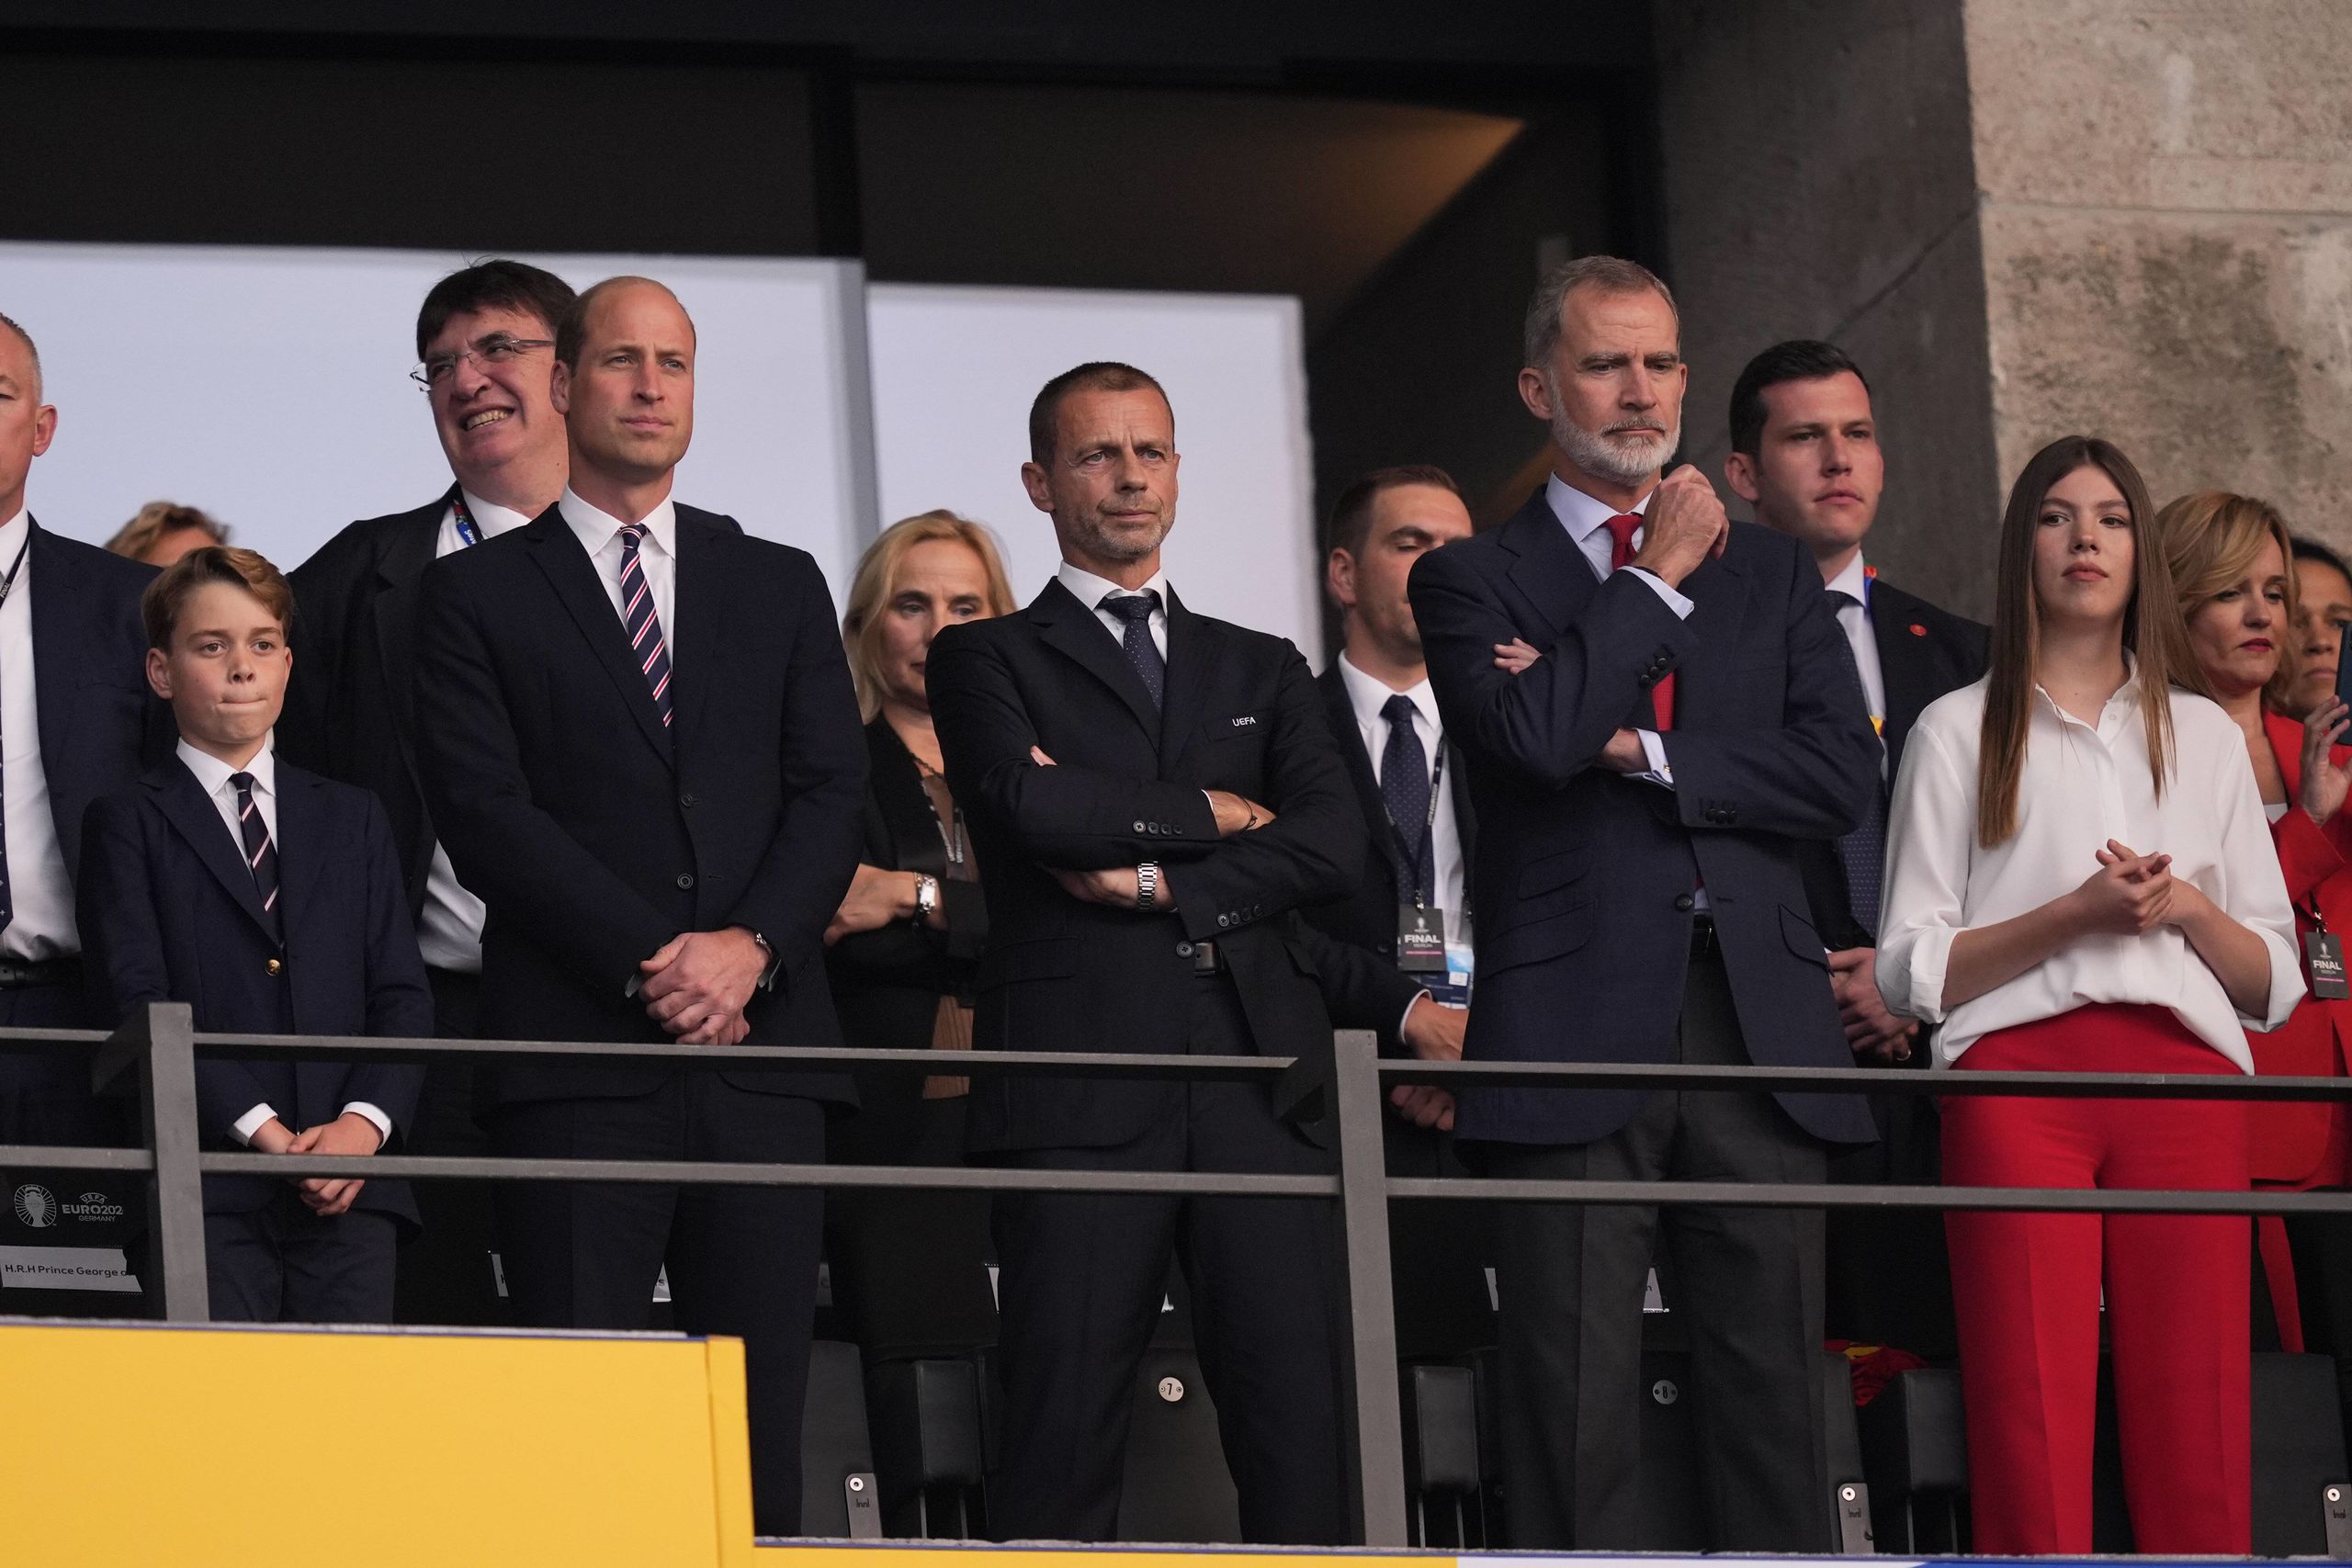 Felipe VI, la infanta Sofía, el príncipe Guillermo y el príncipe George animan a sus países en la final de la Eurocopa